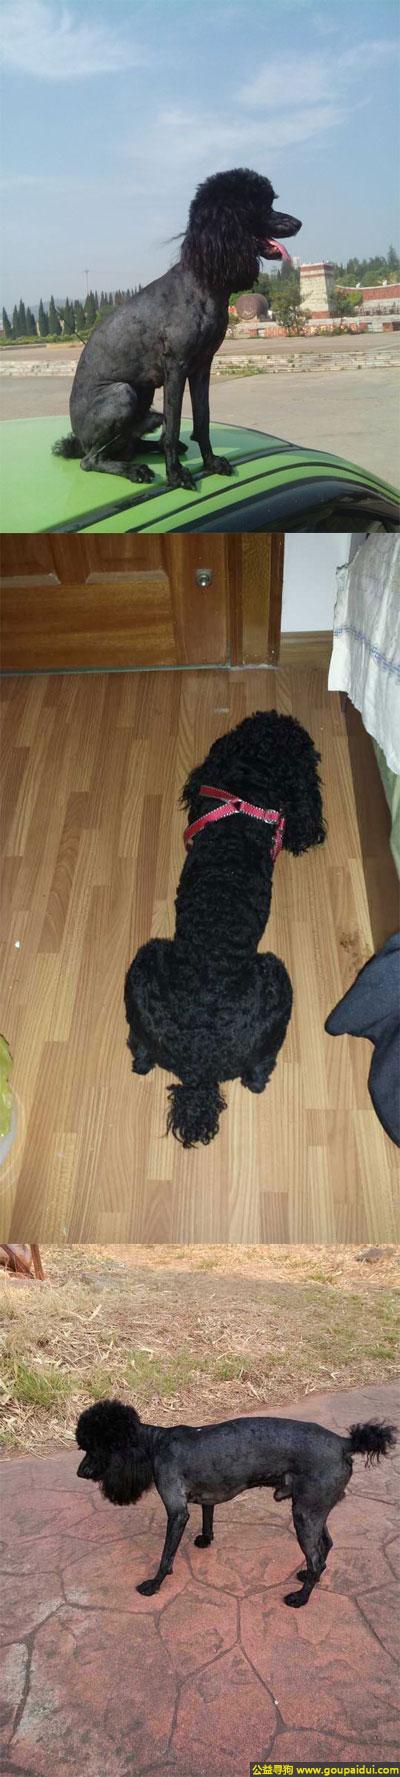 寻找泰迪，南省楚雄市寻狗太阳历大道走失1岁半雄性黑色泰迪体重7公斤，它是一只非常可爱的宠物狗狗，希望它早日回家，不要变成流浪狗。